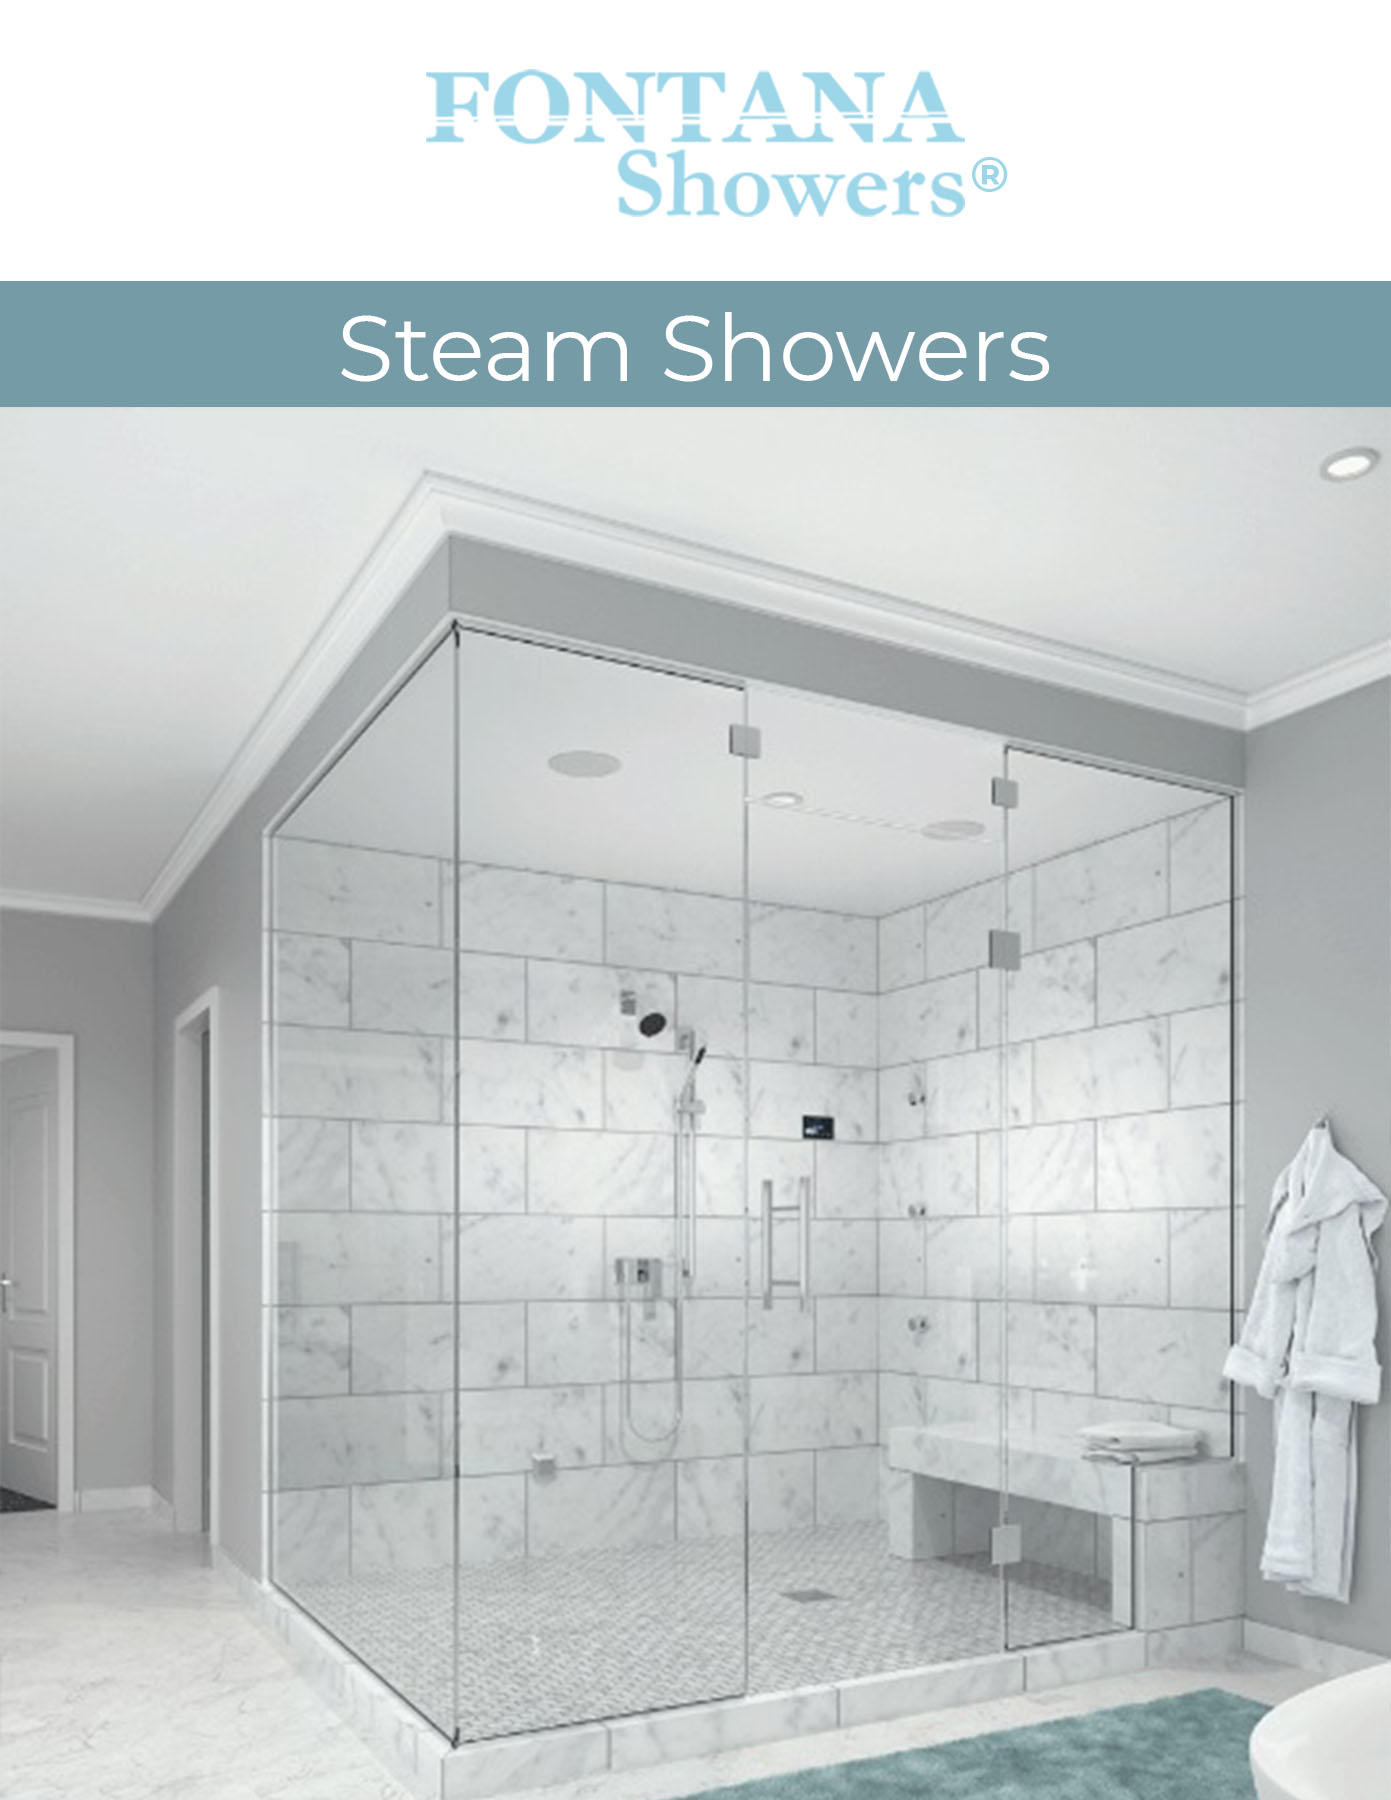 Fontana Showers commercial catalog Steam Showers